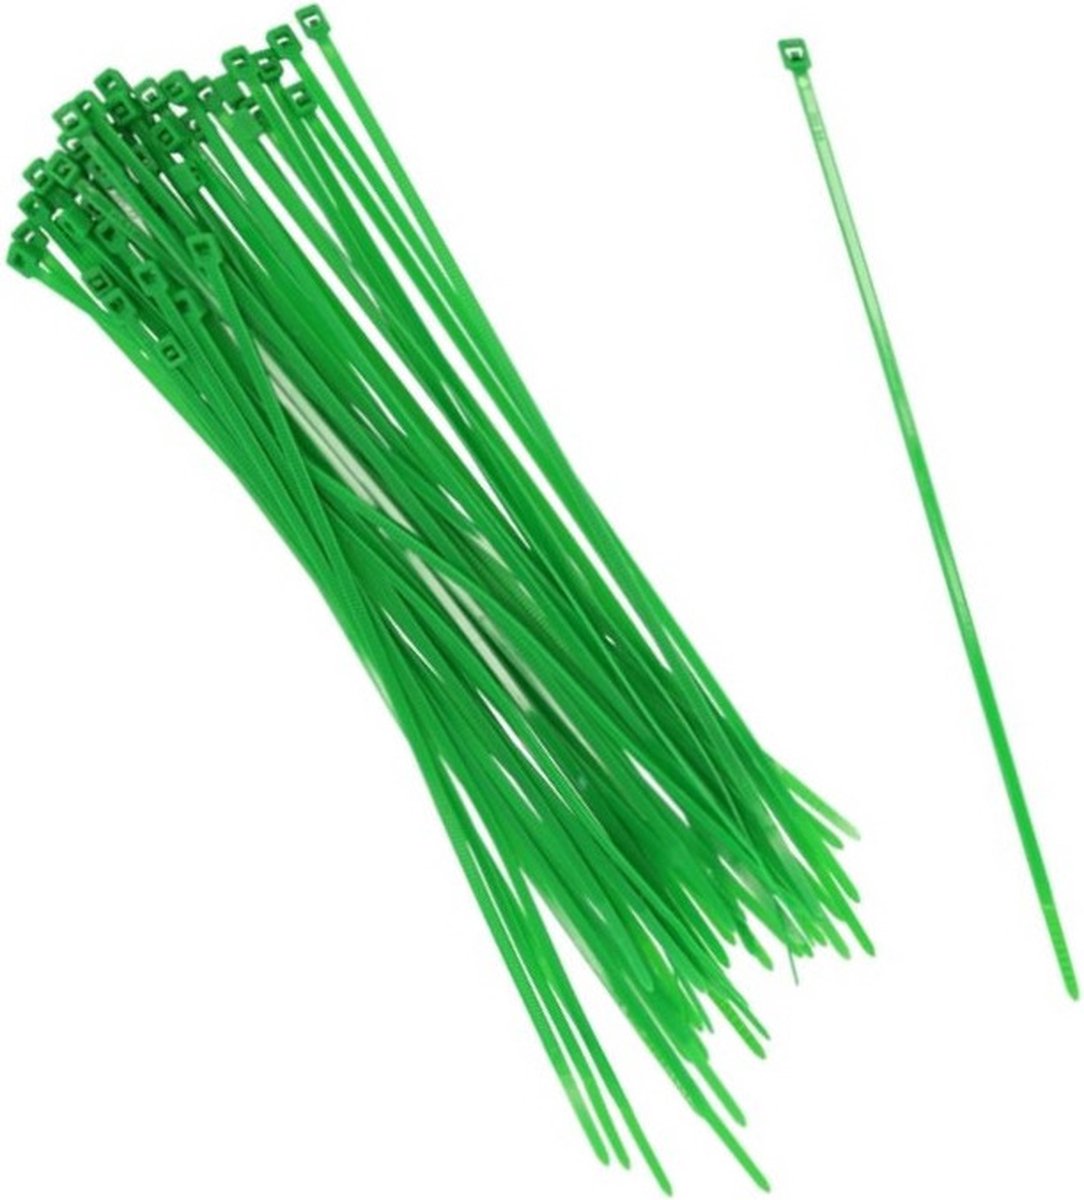 150x stuks Kabelbinders tie-wraps in het groen van 25 cm gemaakt van kunststof - snoeren bindmateriaal